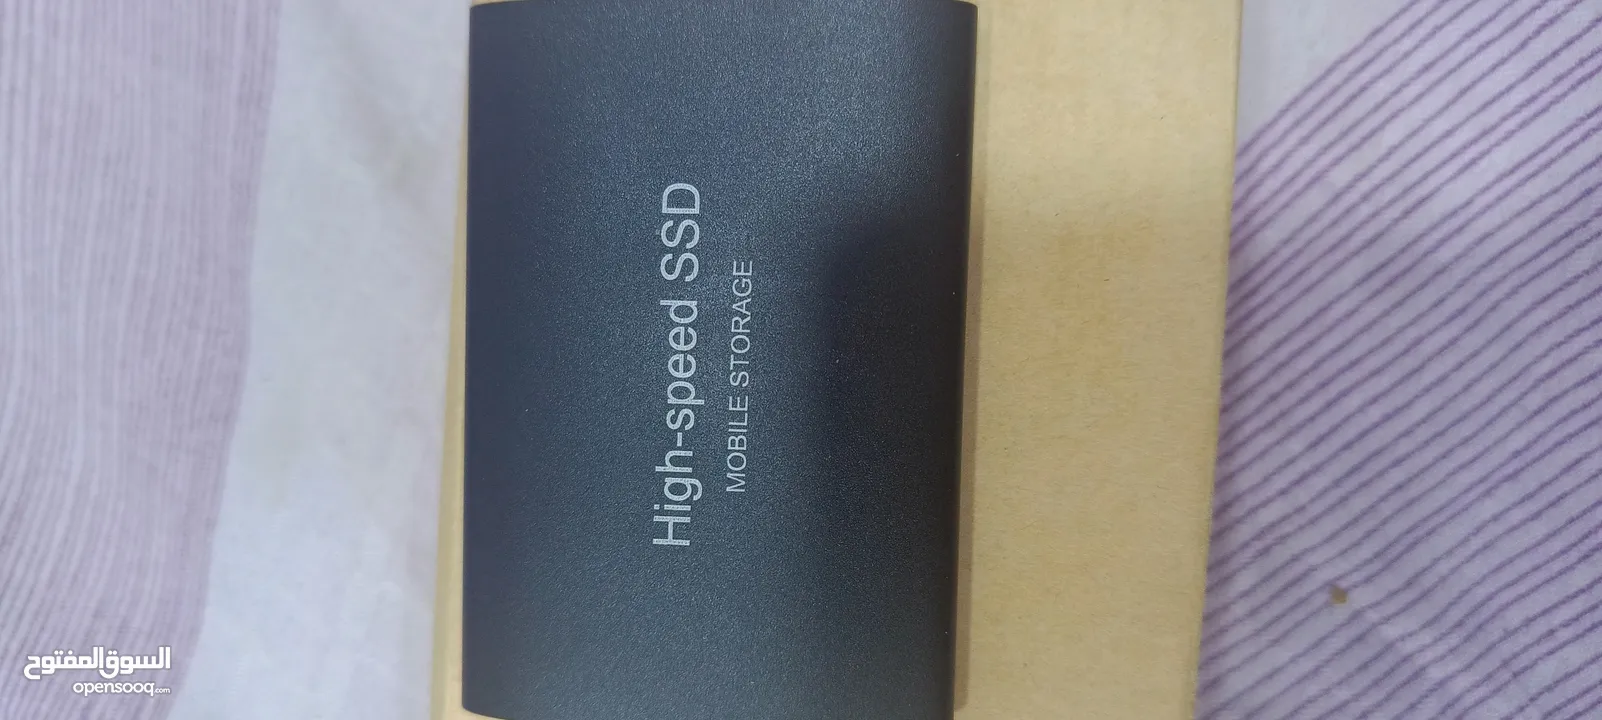 هارد خارجي SSDسعه 2تيرا سعر65الف